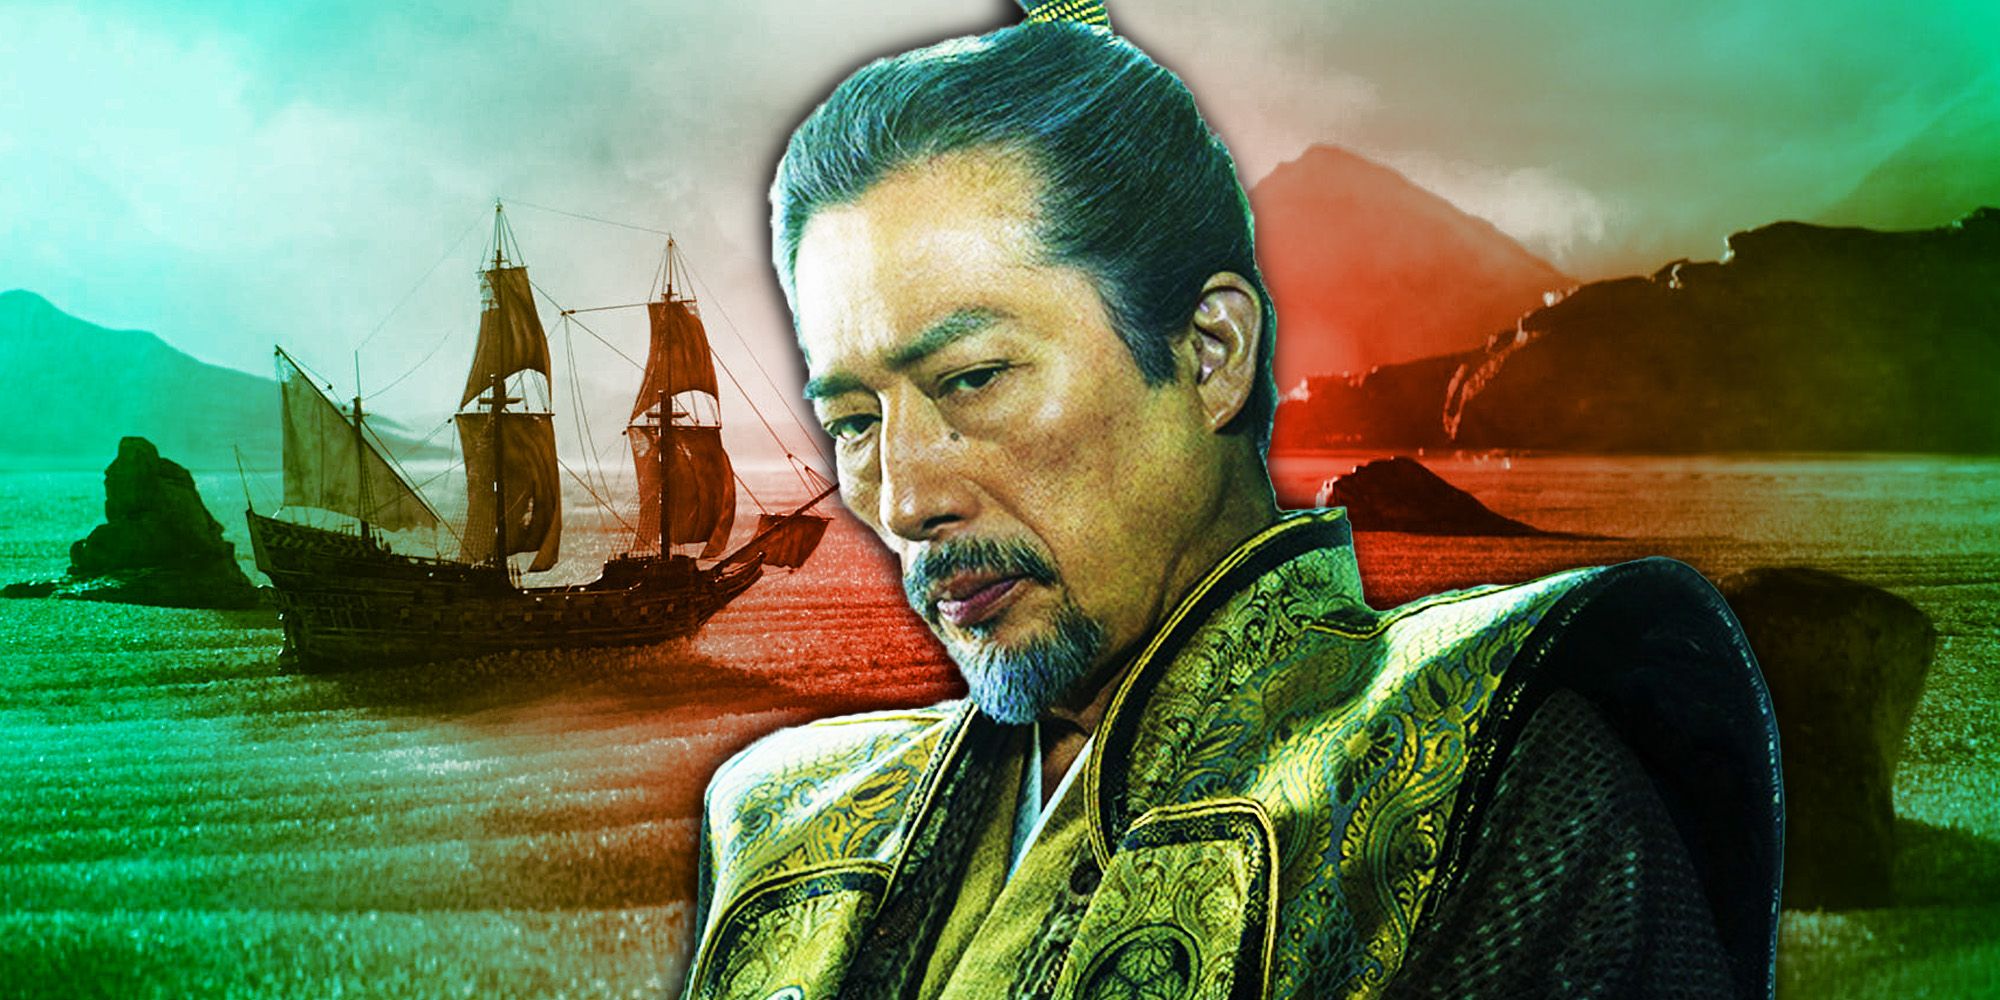 Hiroyuki Sanada as Lord Toranaga in Shogun in front of ships arriving in Japan